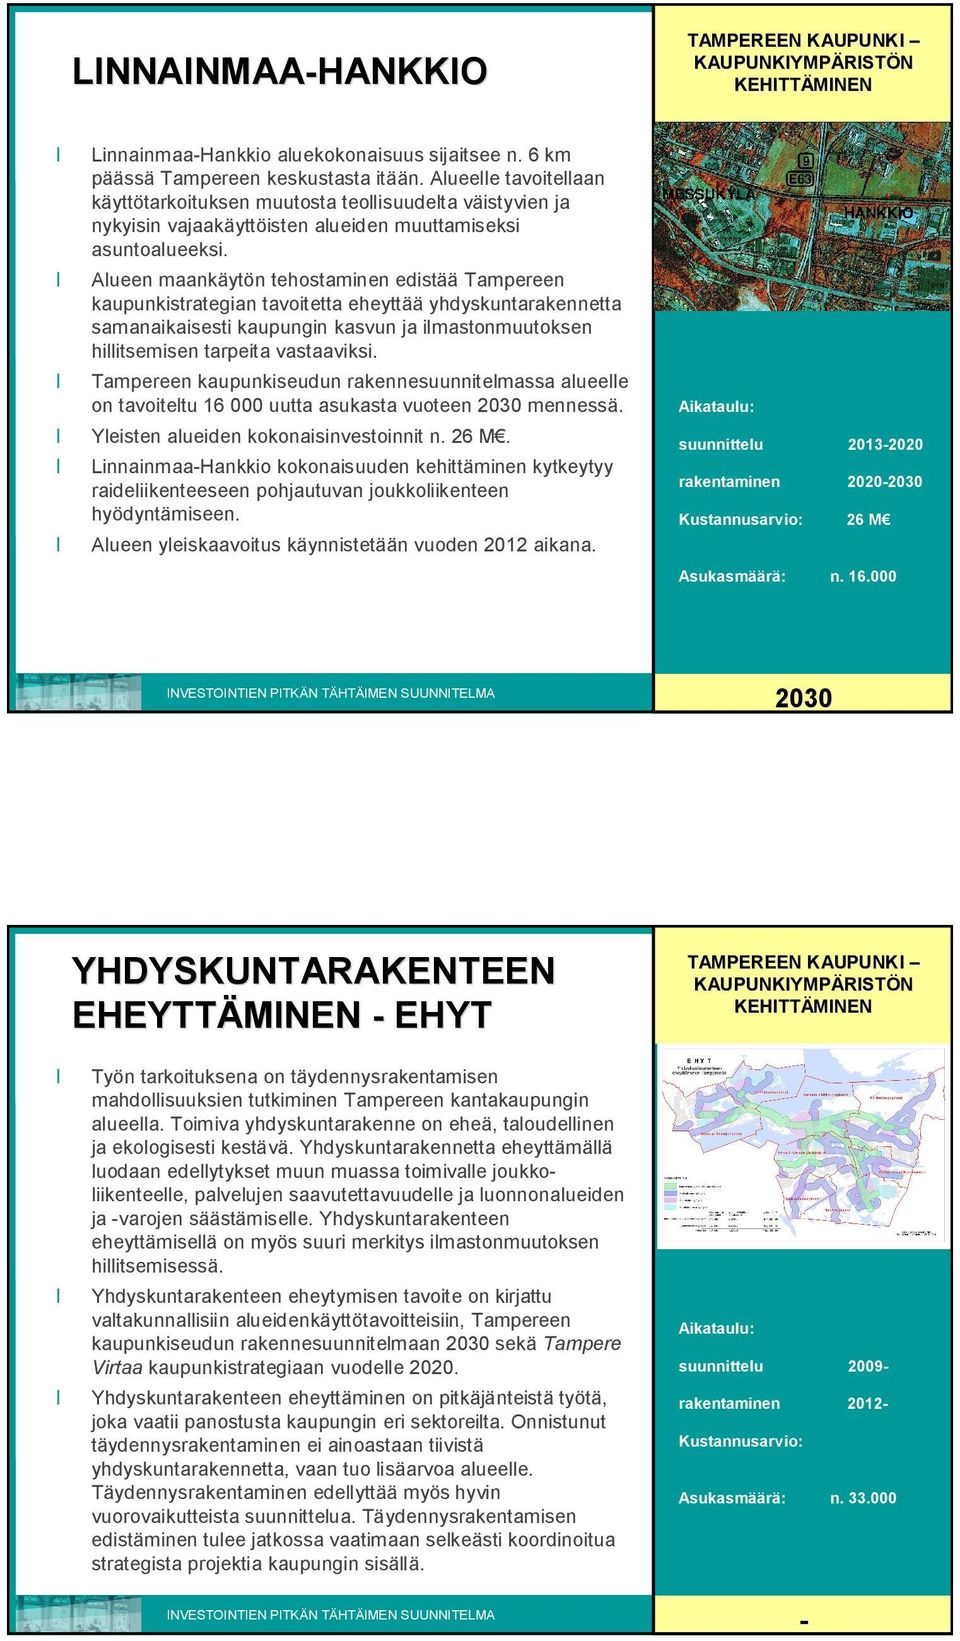 Alueen maankäytön tehostaminen edistää Tampereen kaupunkistrategian tavoitetta eheyttää yhdyskuntarakennetta samanaikaisesti kaupungin kasvun ja ilmastonmuutoksen hillitsemisen tarpeita vastaaviksi.